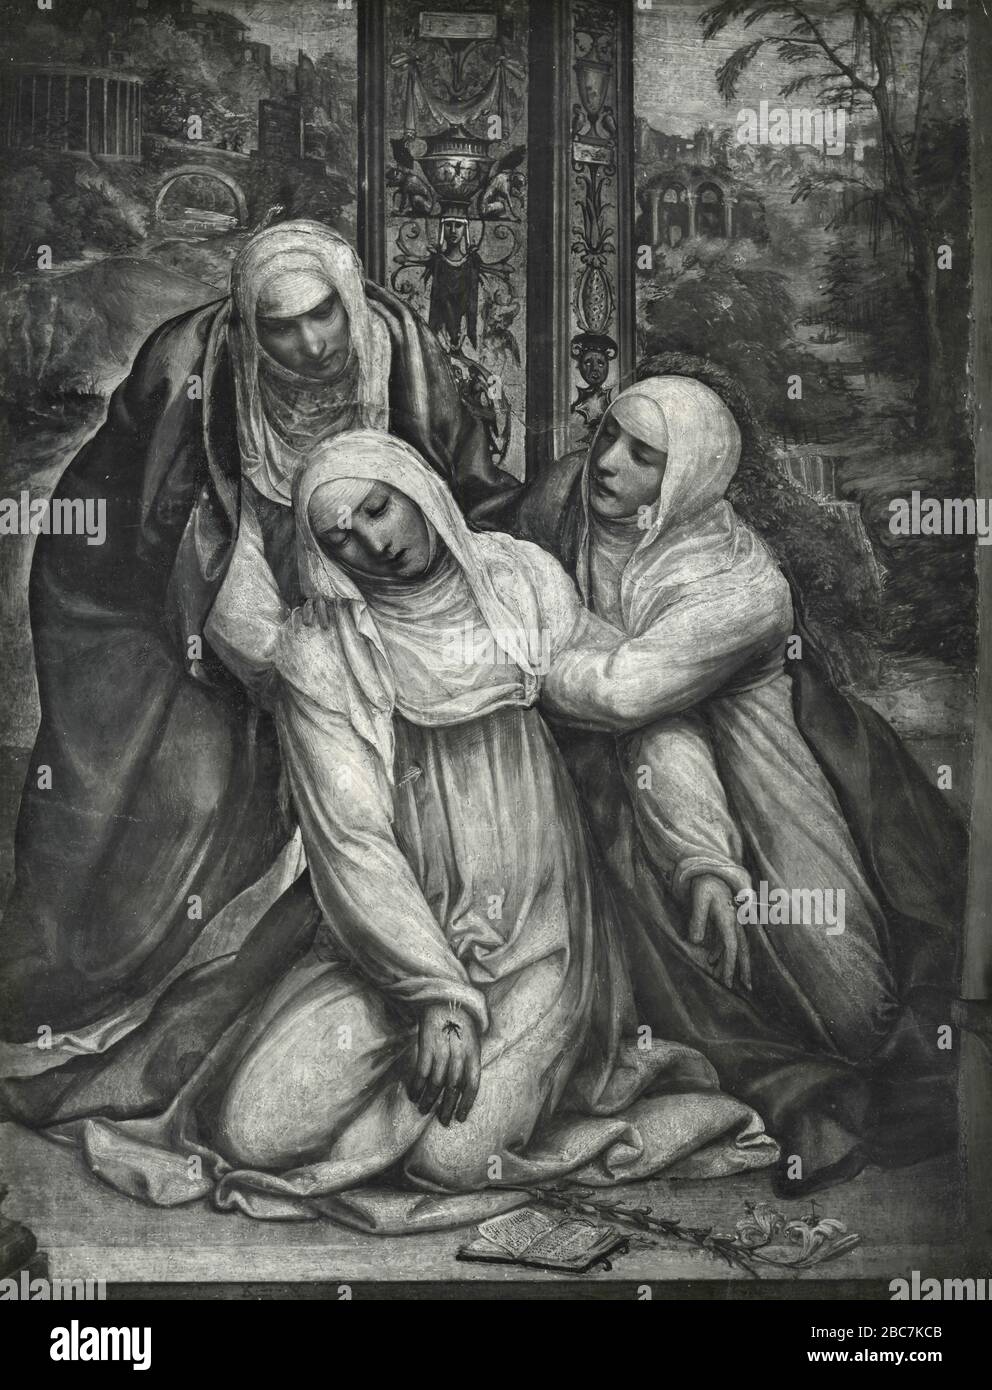 S. Caterina si impenera dopo aver ricevuto gli stigmi, dipinto dall'artista italiano Sodoma, chiesa di S. Dominique, Siena, Italia anni Venti Foto Stock